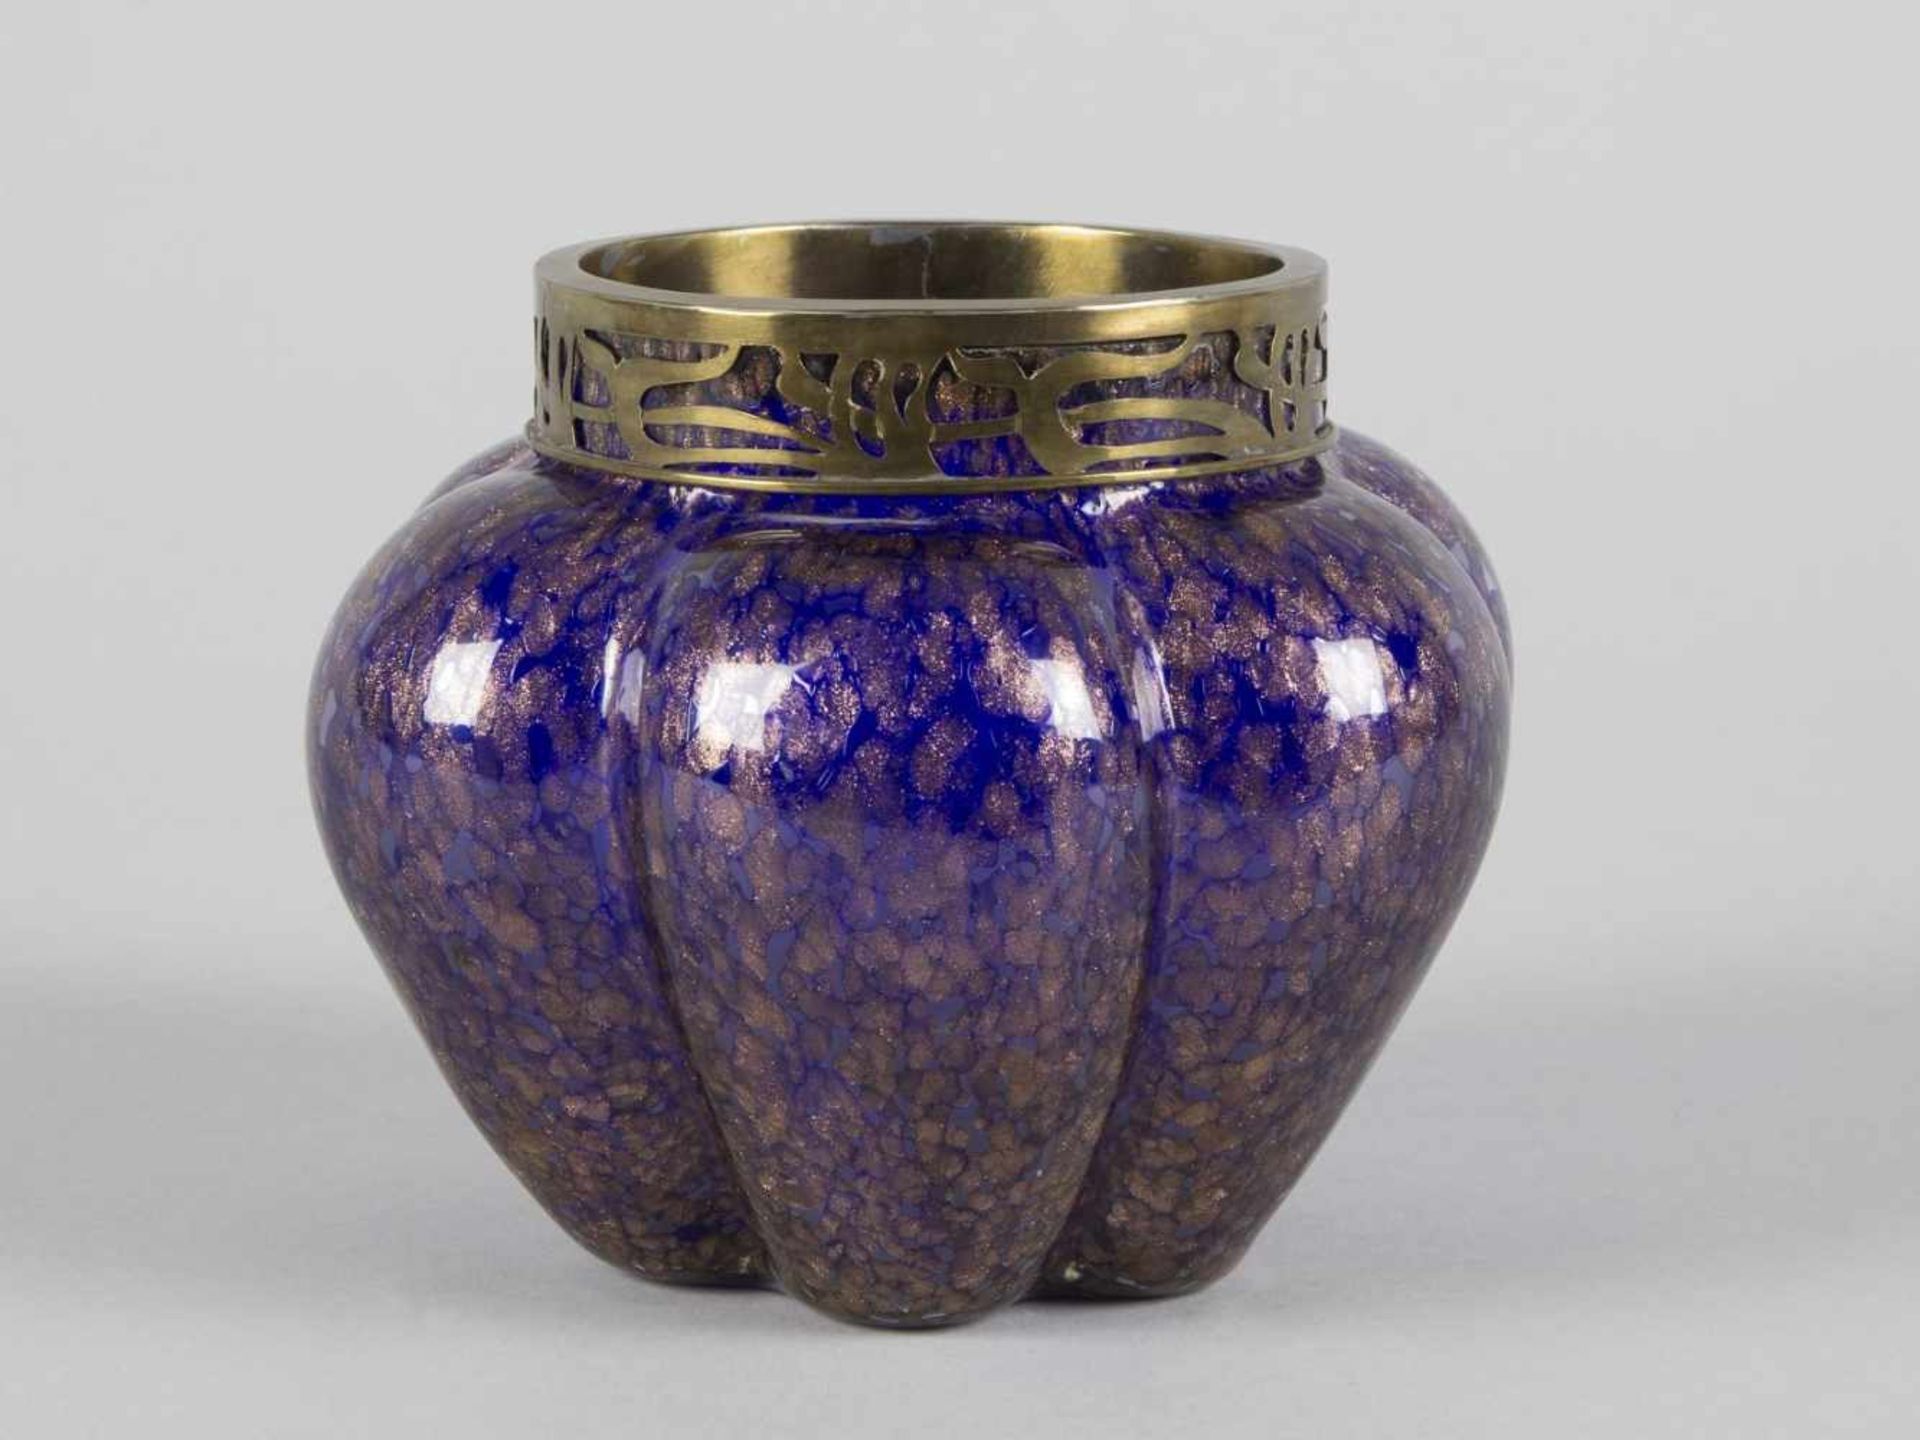 VaseKobaltblaues Glas, überfangen mit farbl. Glas mit Aventurinflocken. Sechsfach gemuldeter